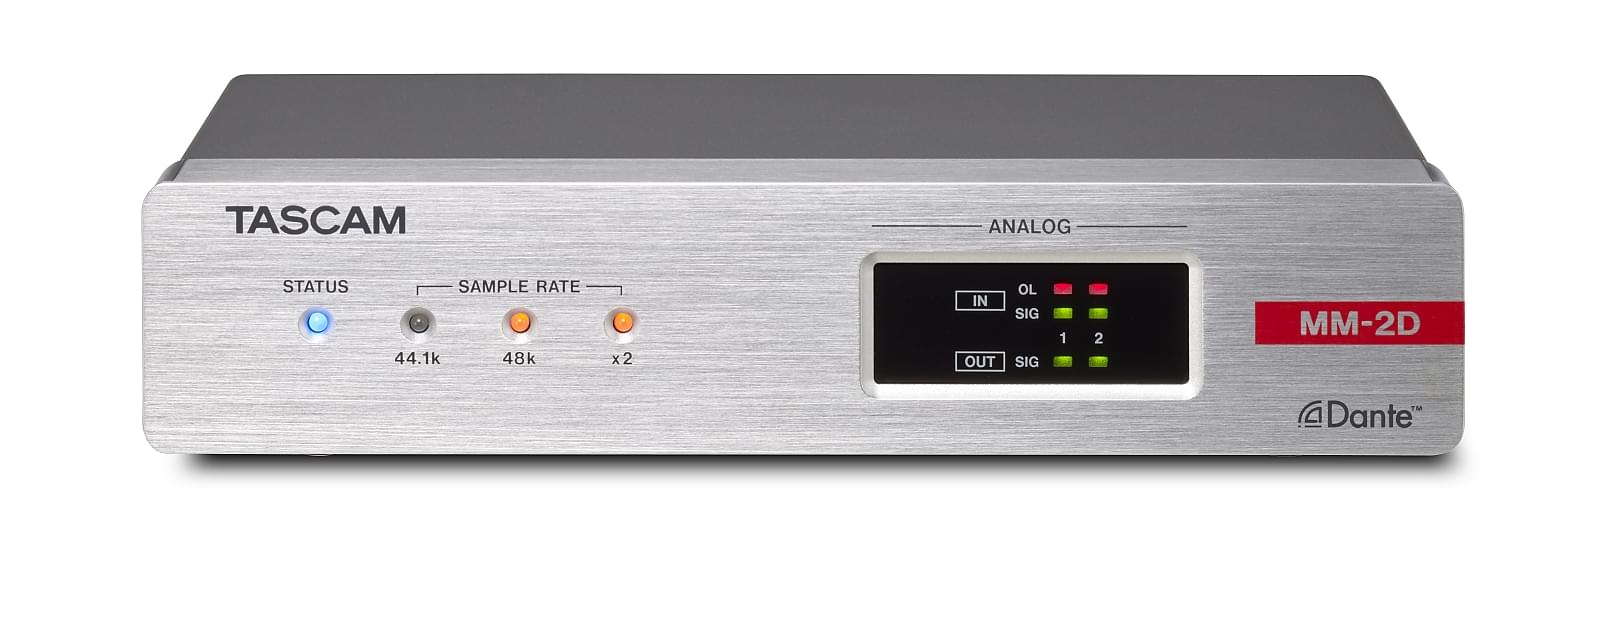 Convertisseur analogique-Dante-analogique 2 canaux avec mixeur DSP | Tascam MM-2D